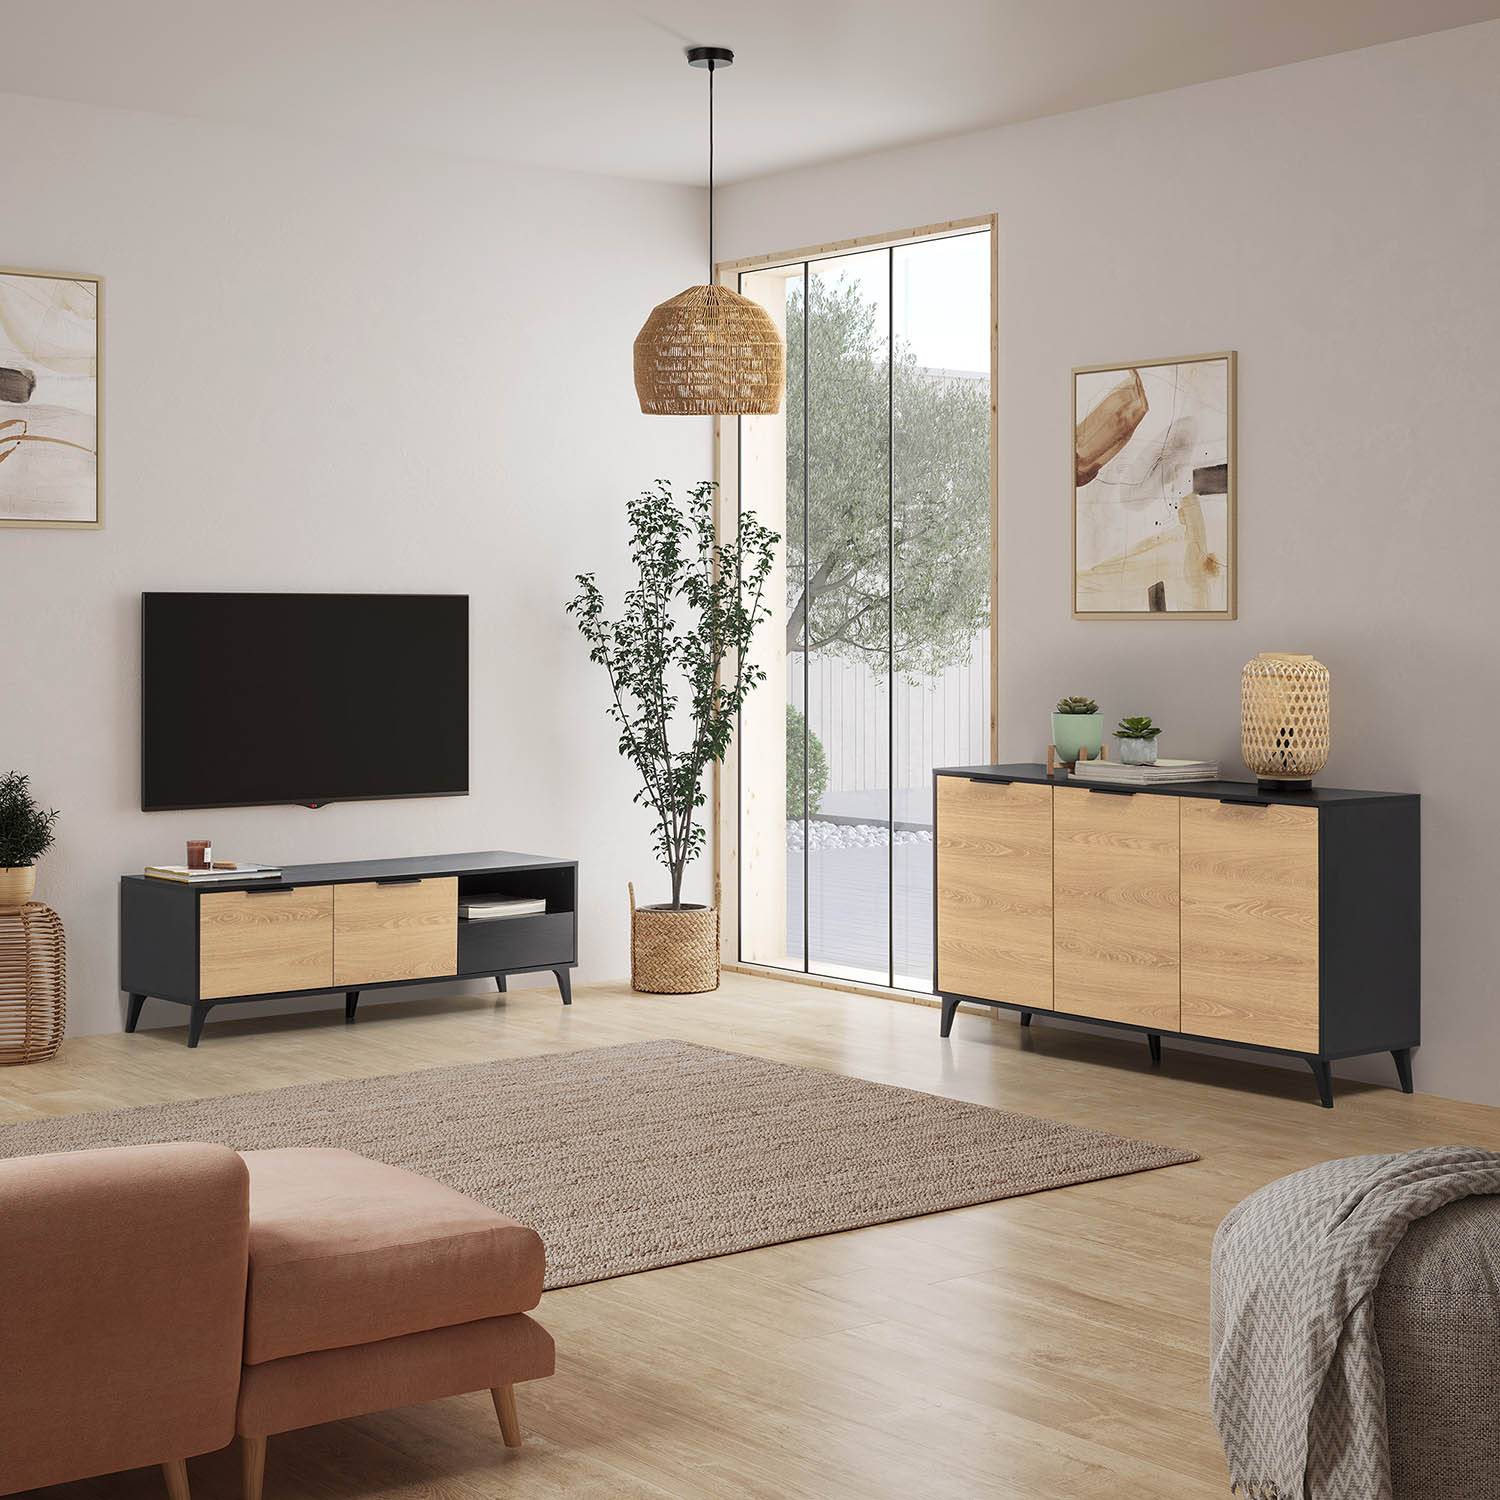 Conjunto de muebles de salón compuesto por mueble de TV con cuatro cajones  y dos armarios en color madera natural